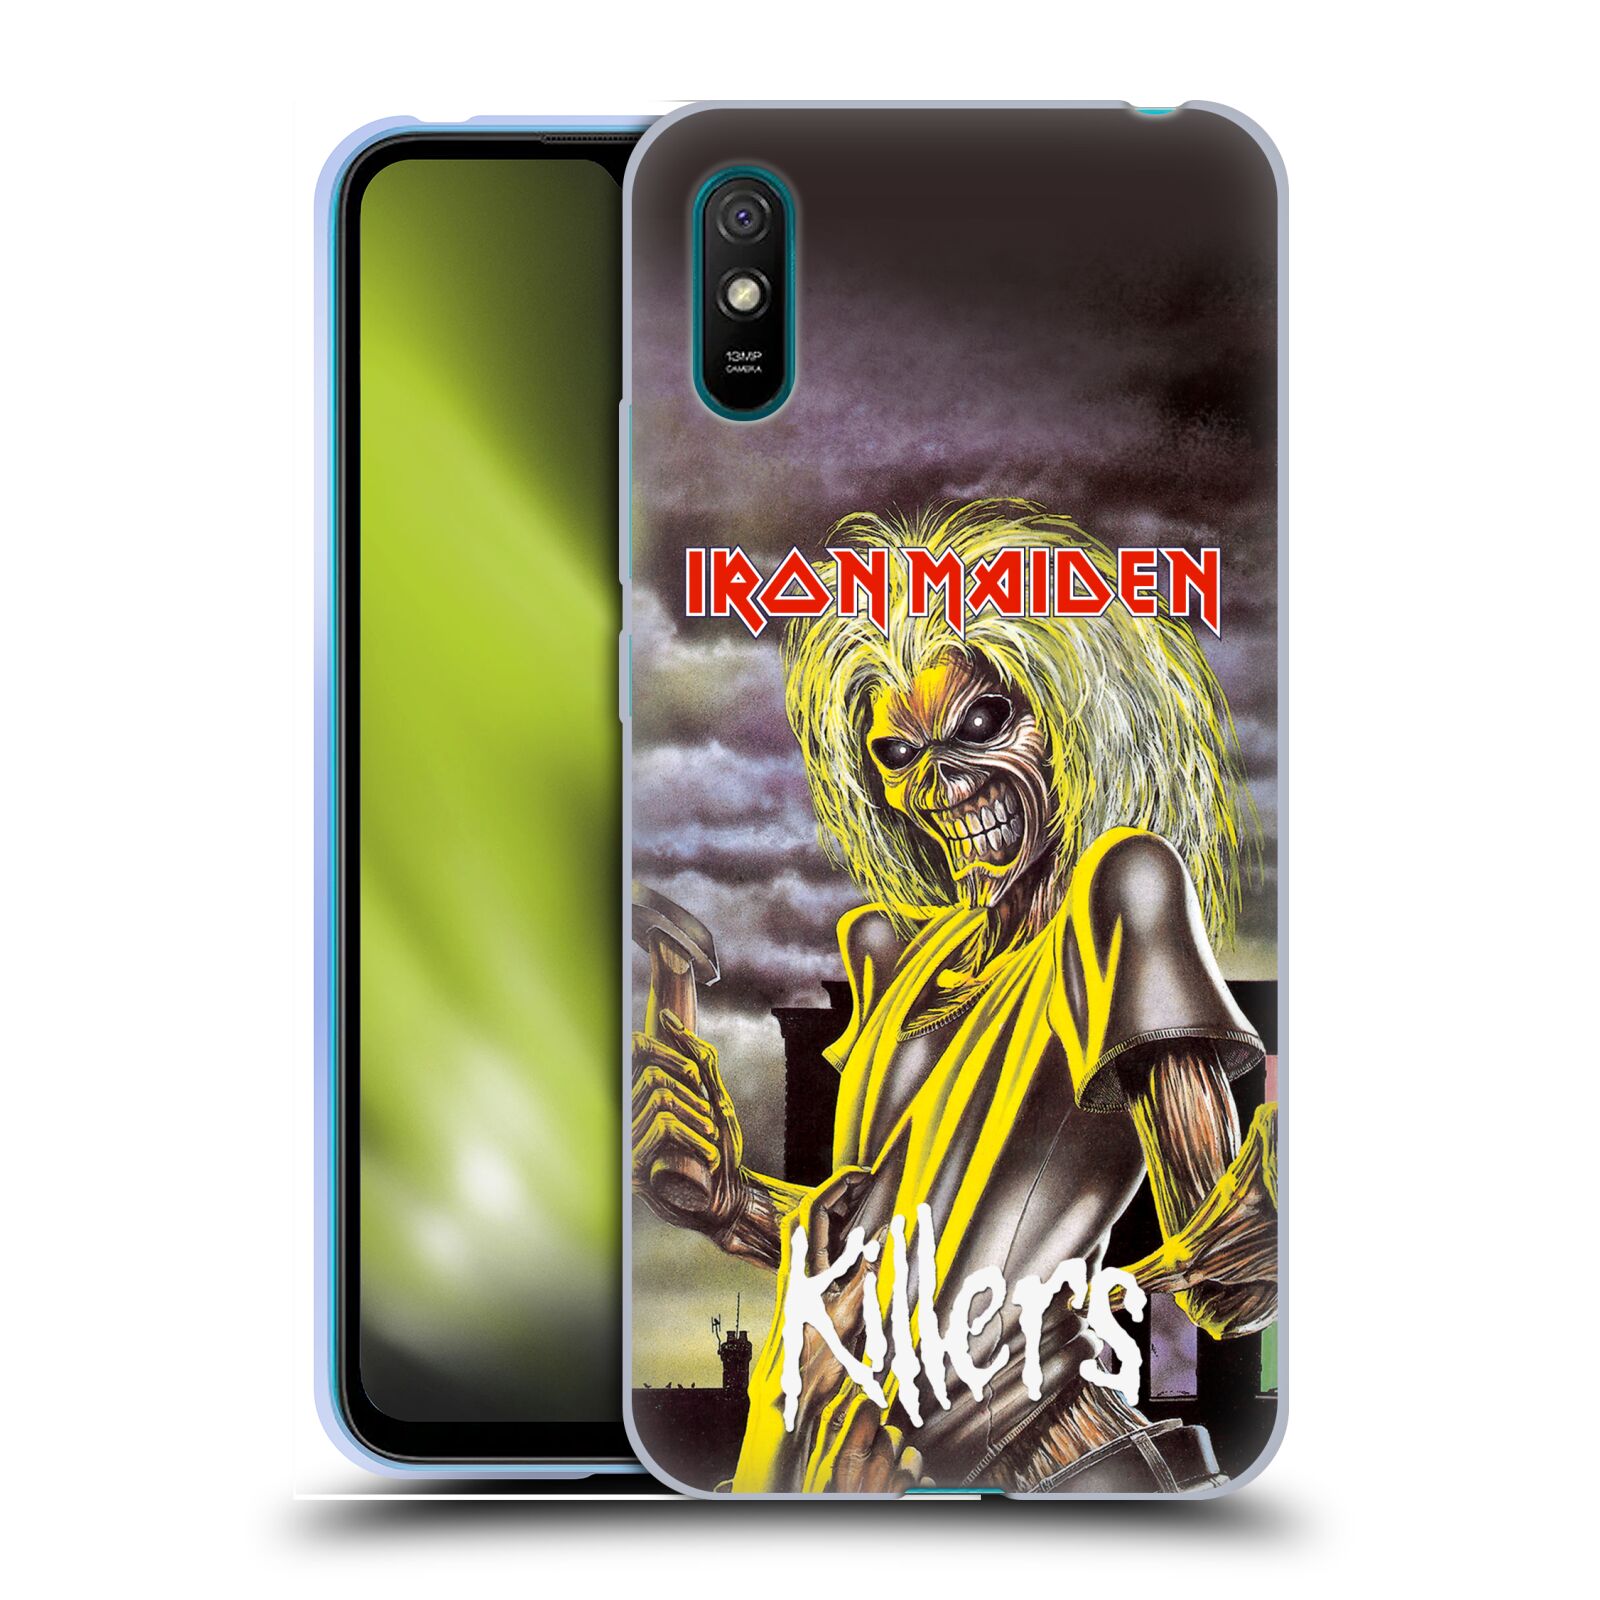 Silikonové pouzdro na mobil Xiaomi Redmi 9A / 9AT - Head Case - Iron Maiden - Killers (Silikonový kryt, obal, pouzdro na mobilní telefon Xiaomi Redmi 9A / Xiaomi Redmi 9AT s motivem Iron Maiden - Killers)